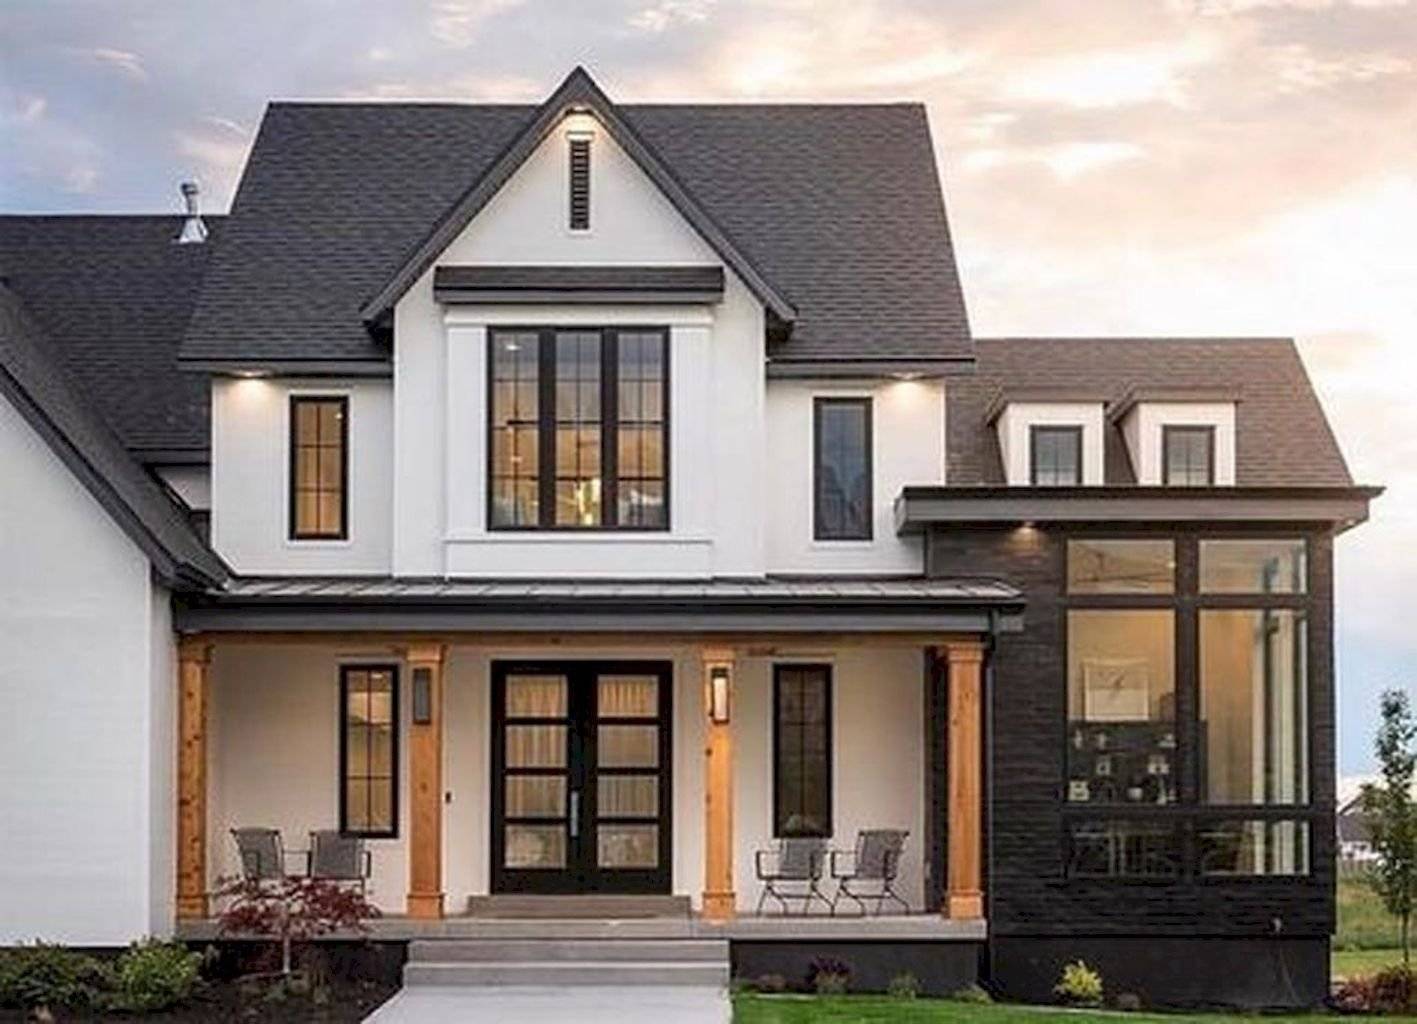 Красивые частные дома — лучшие идеи и примеры дизайна красивого дома. фото самых крутых идей 2020 года!